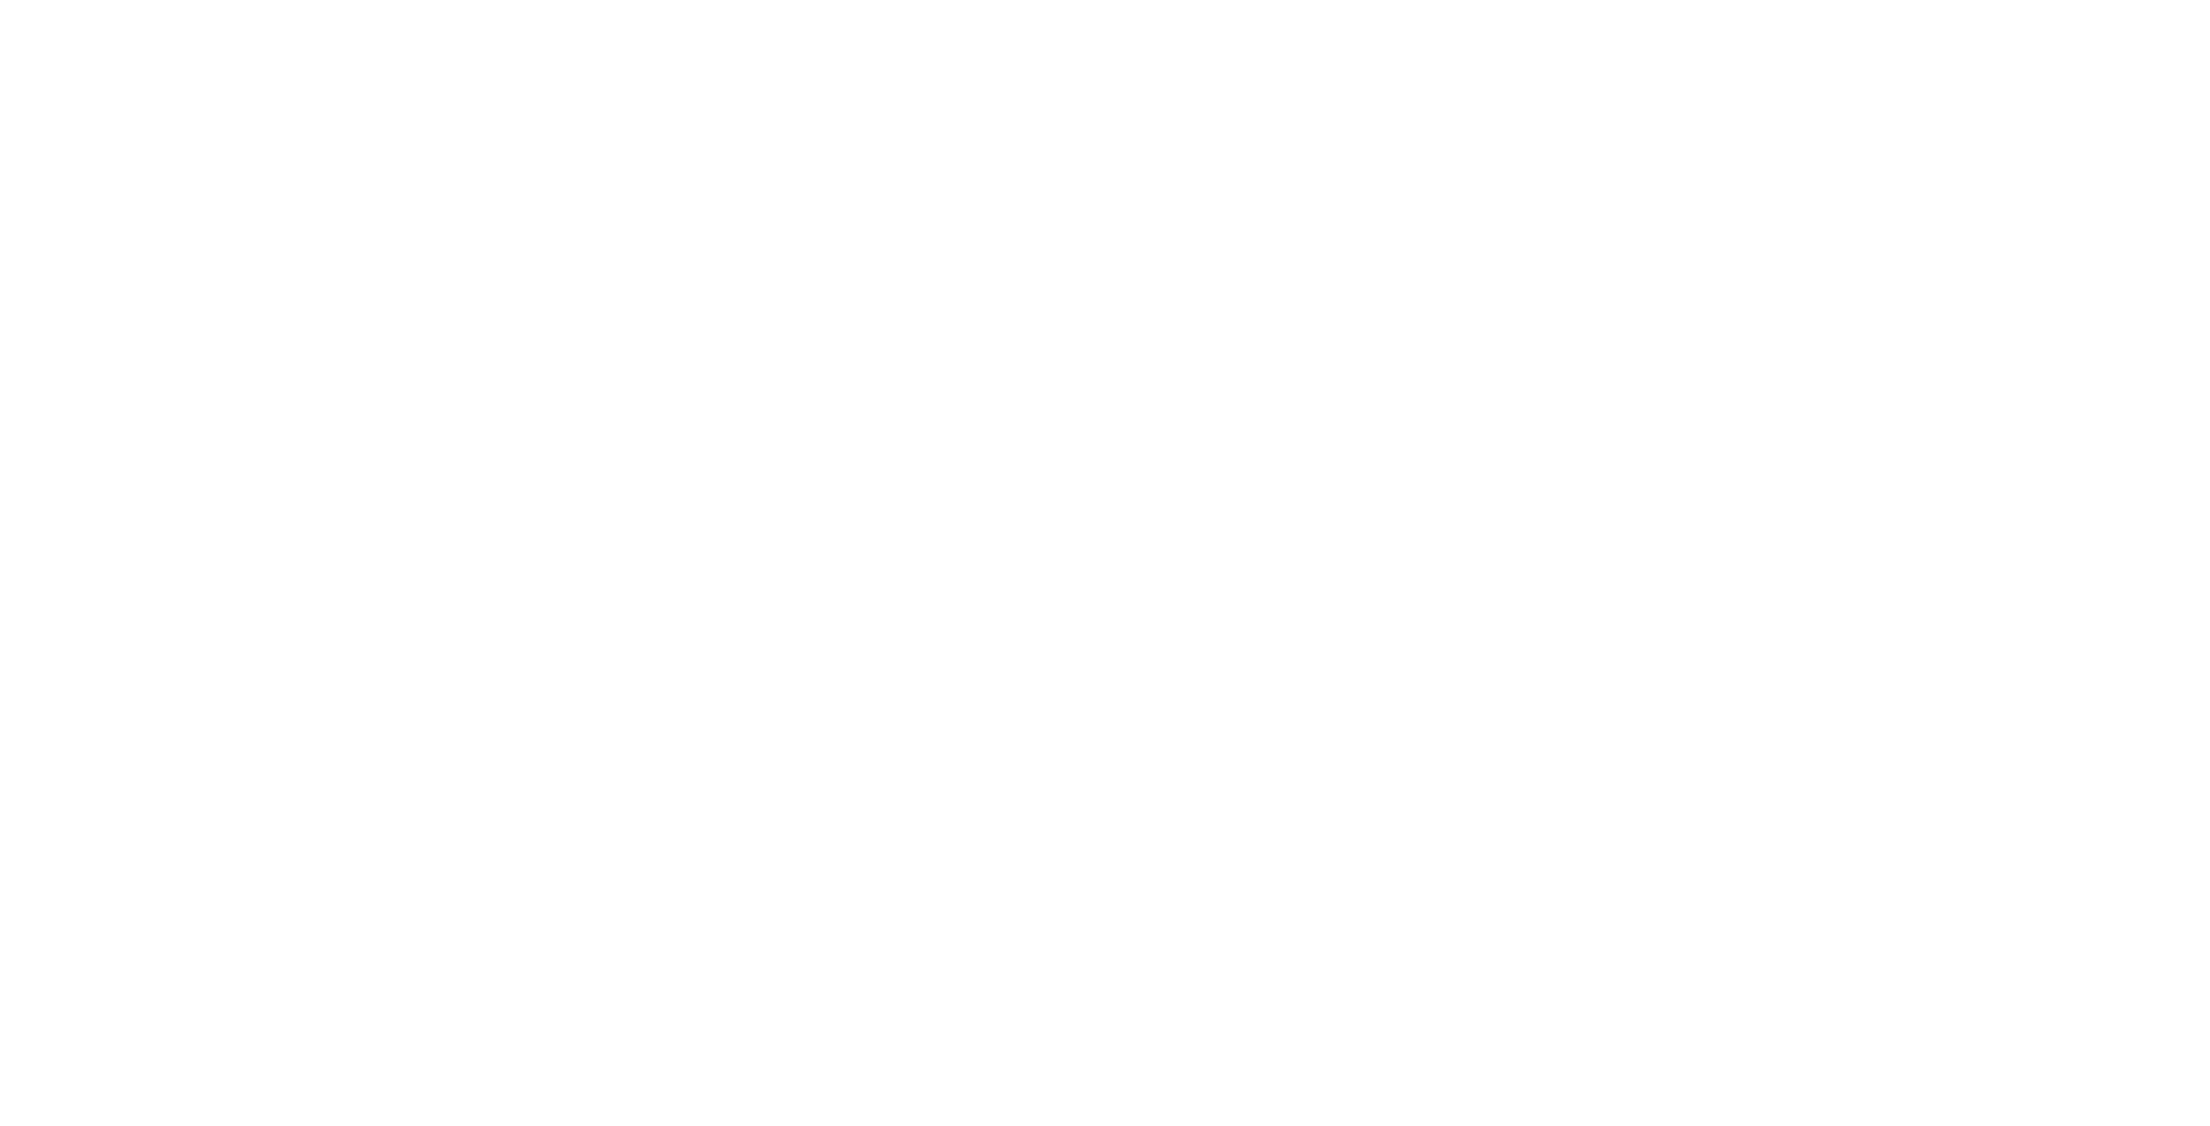 KeyPlot Investments